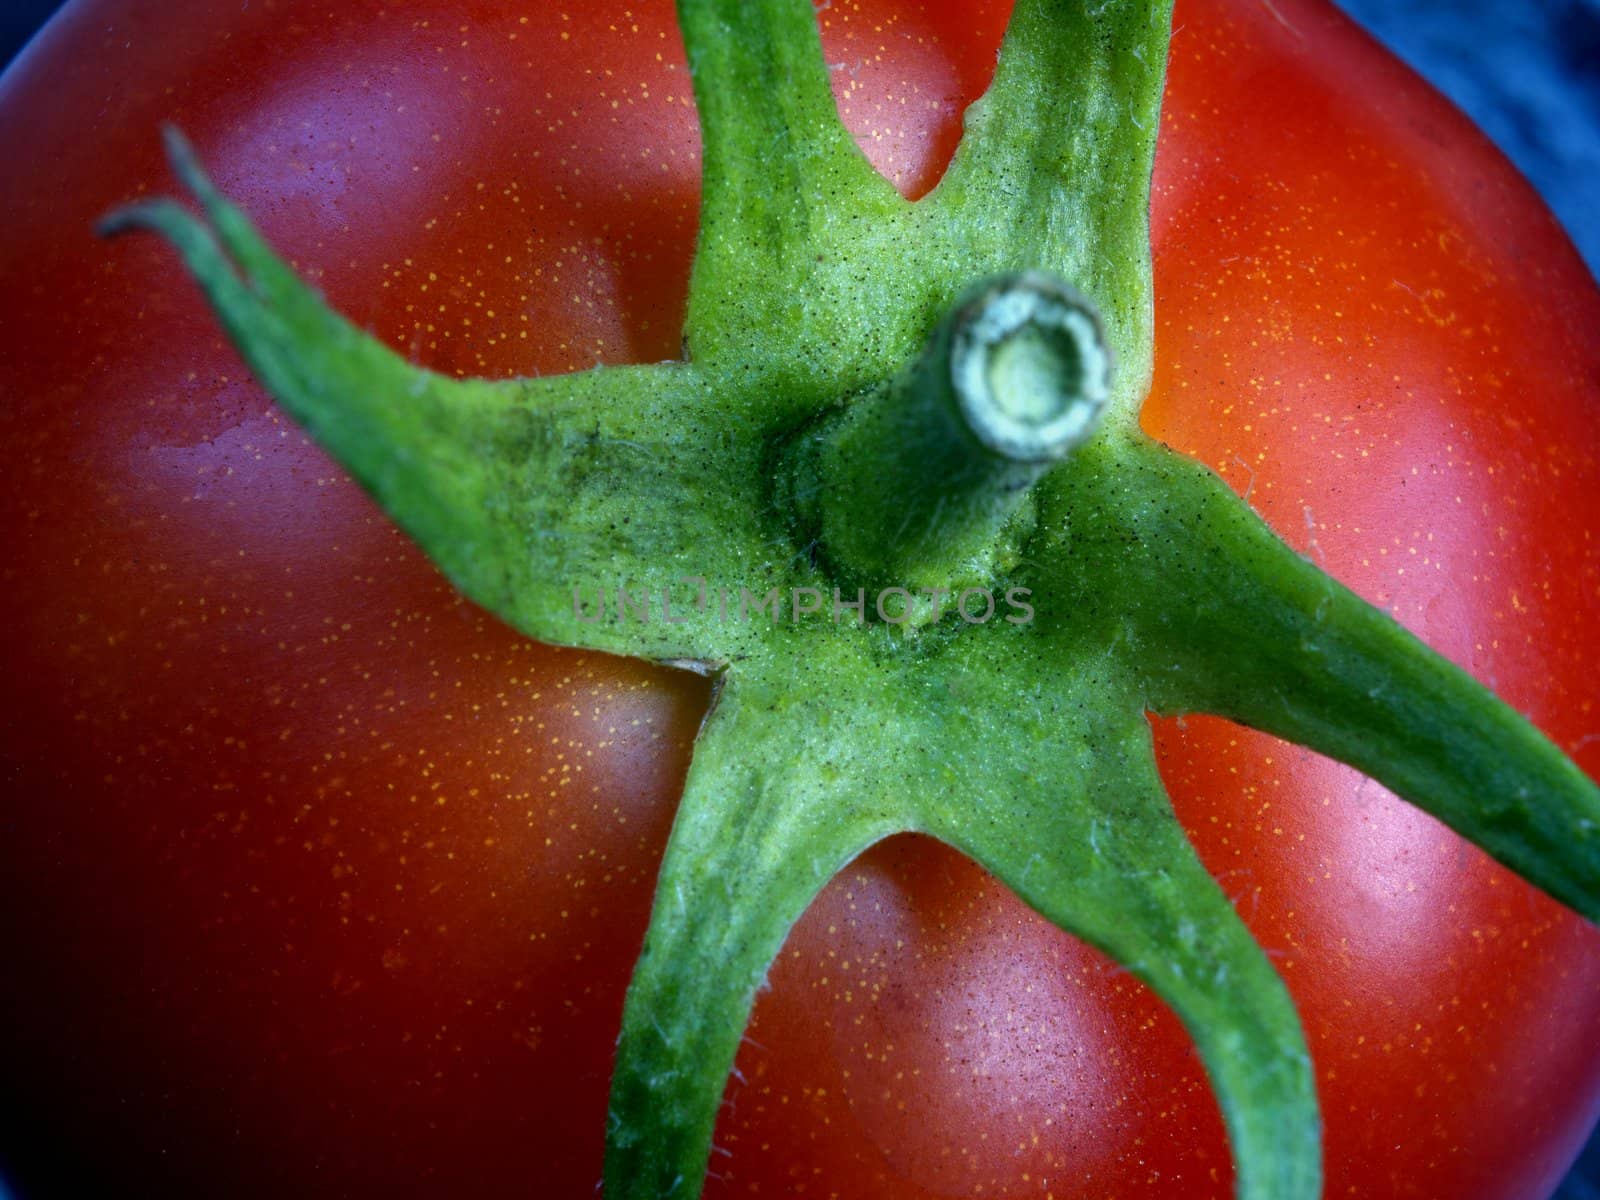 Tomato. by vsphoto